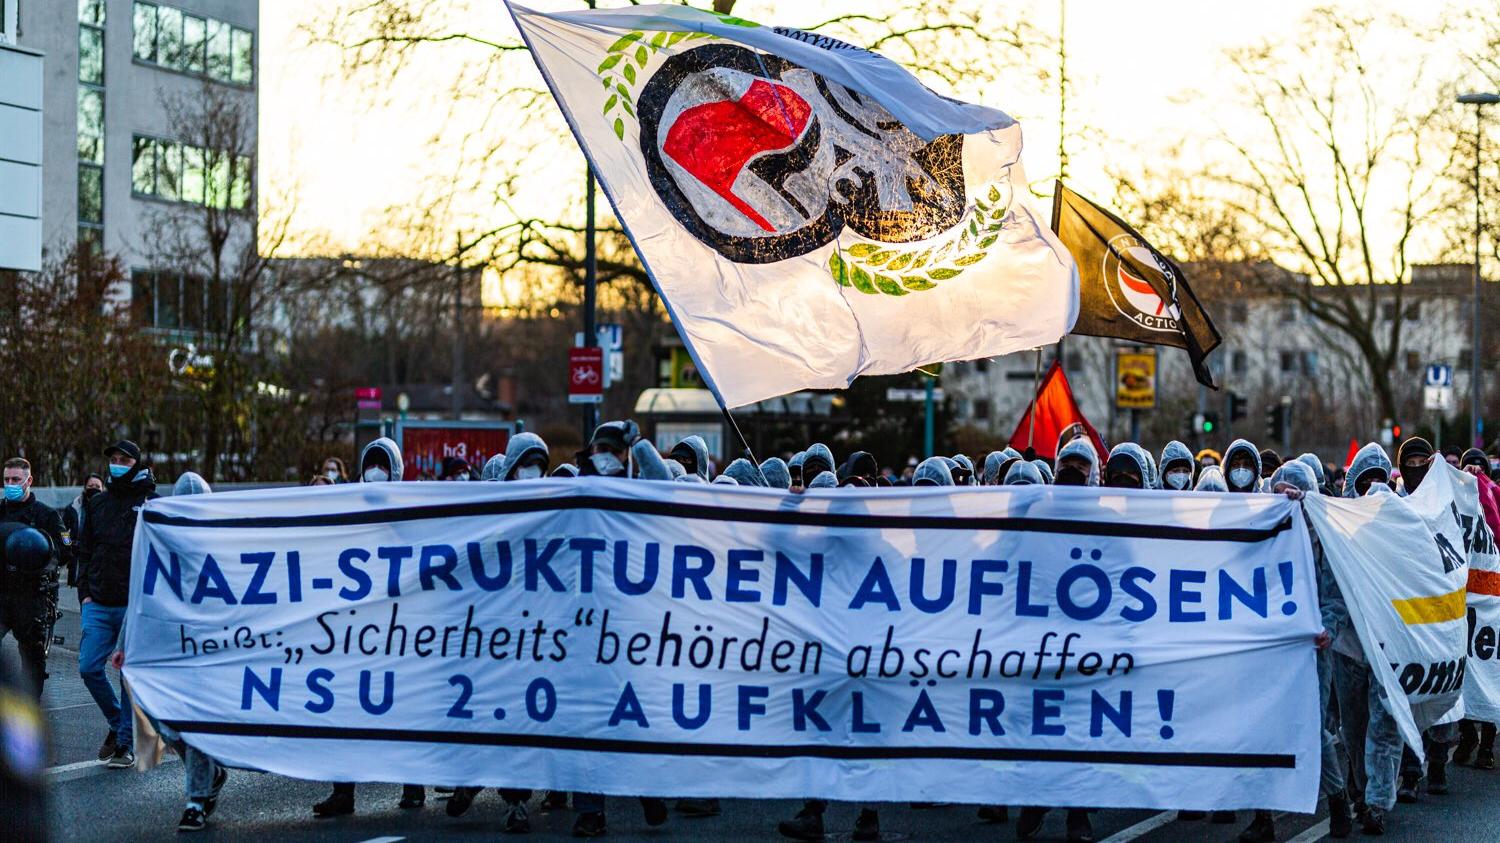 Mehrere hundert Menschen demonstrieren am 12. Februar 2022 in Frankfurt und fordern Aufklärung der NSU-2.0.-Drohserie. © Protestfotografie Frankfurt